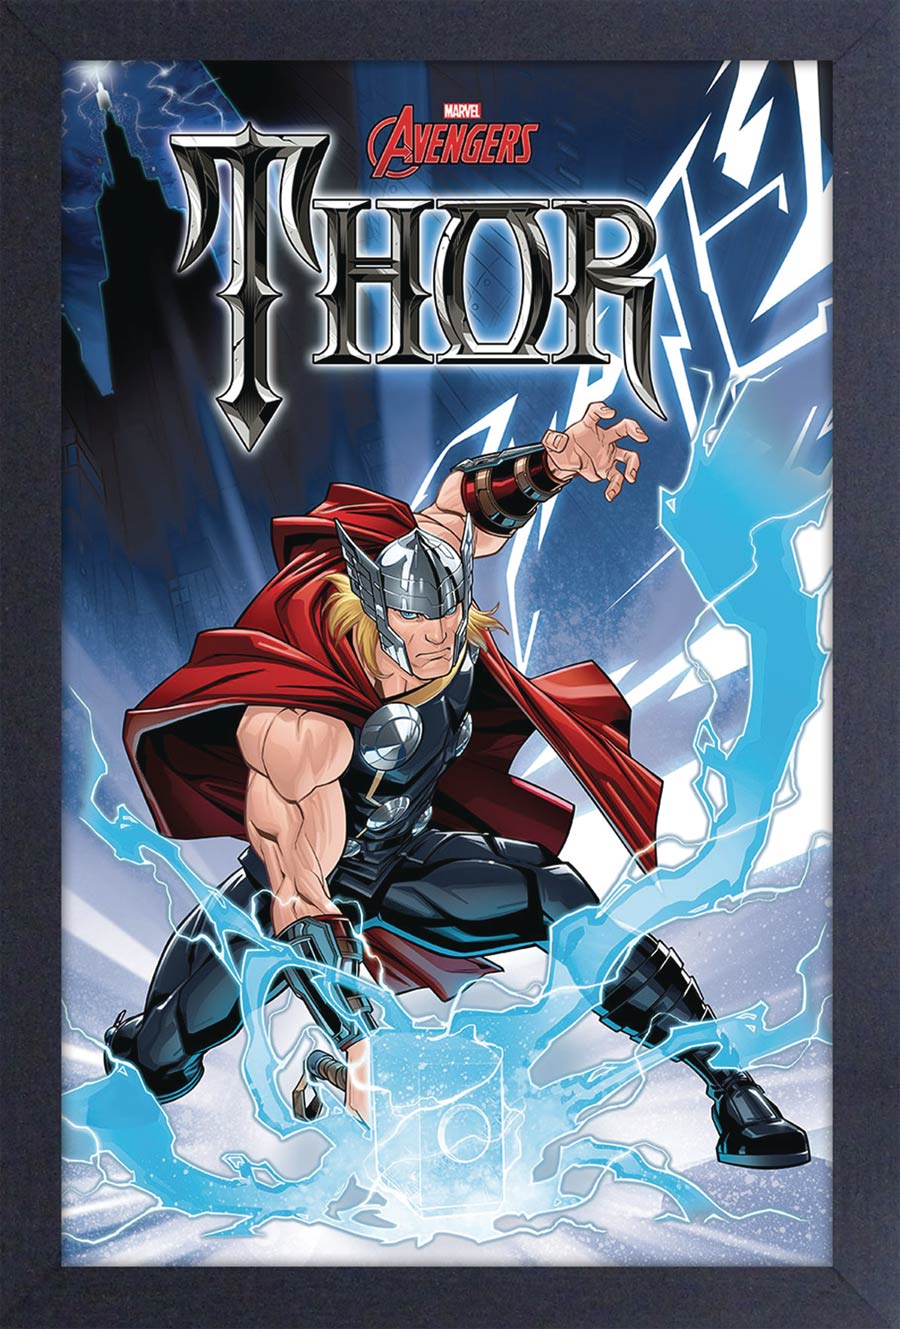 Marvel 11x17 Framed Print - Thor